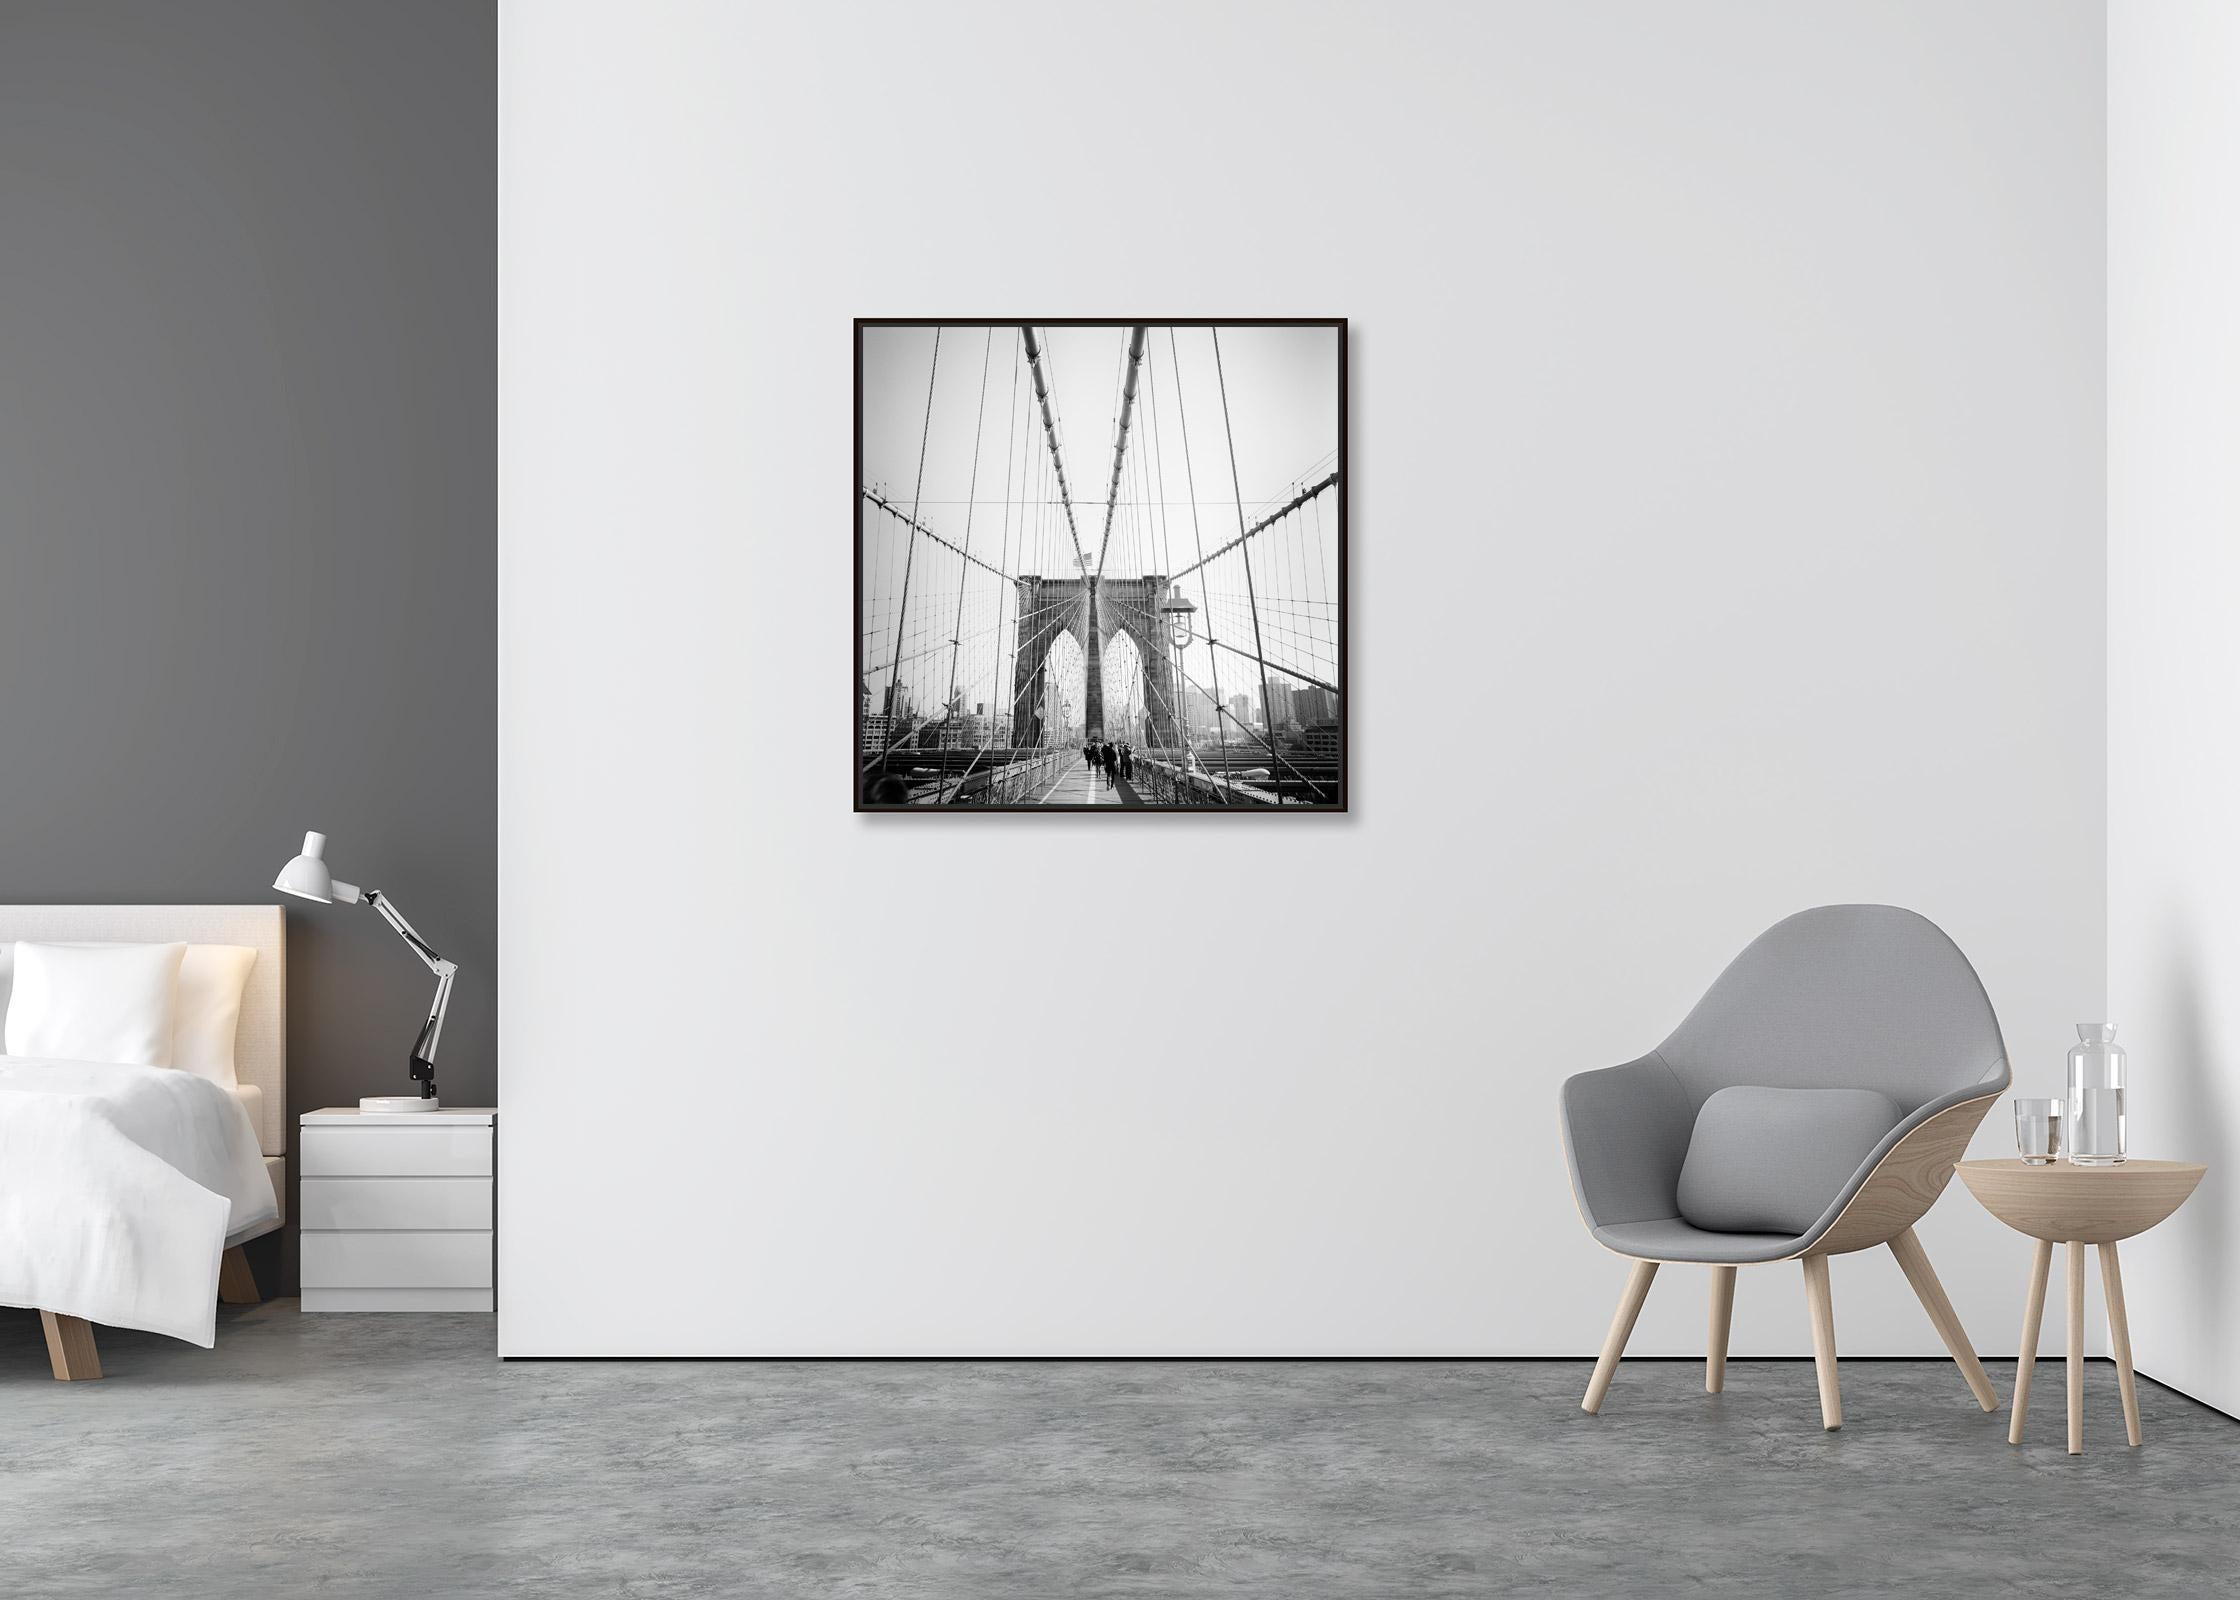 Brooklyn Bridge, New York City, USA, Schwarz-Weiß-Fotografie, Kunstlandschaft (Zeitgenössisch), Photograph, von Gerald Berghammer